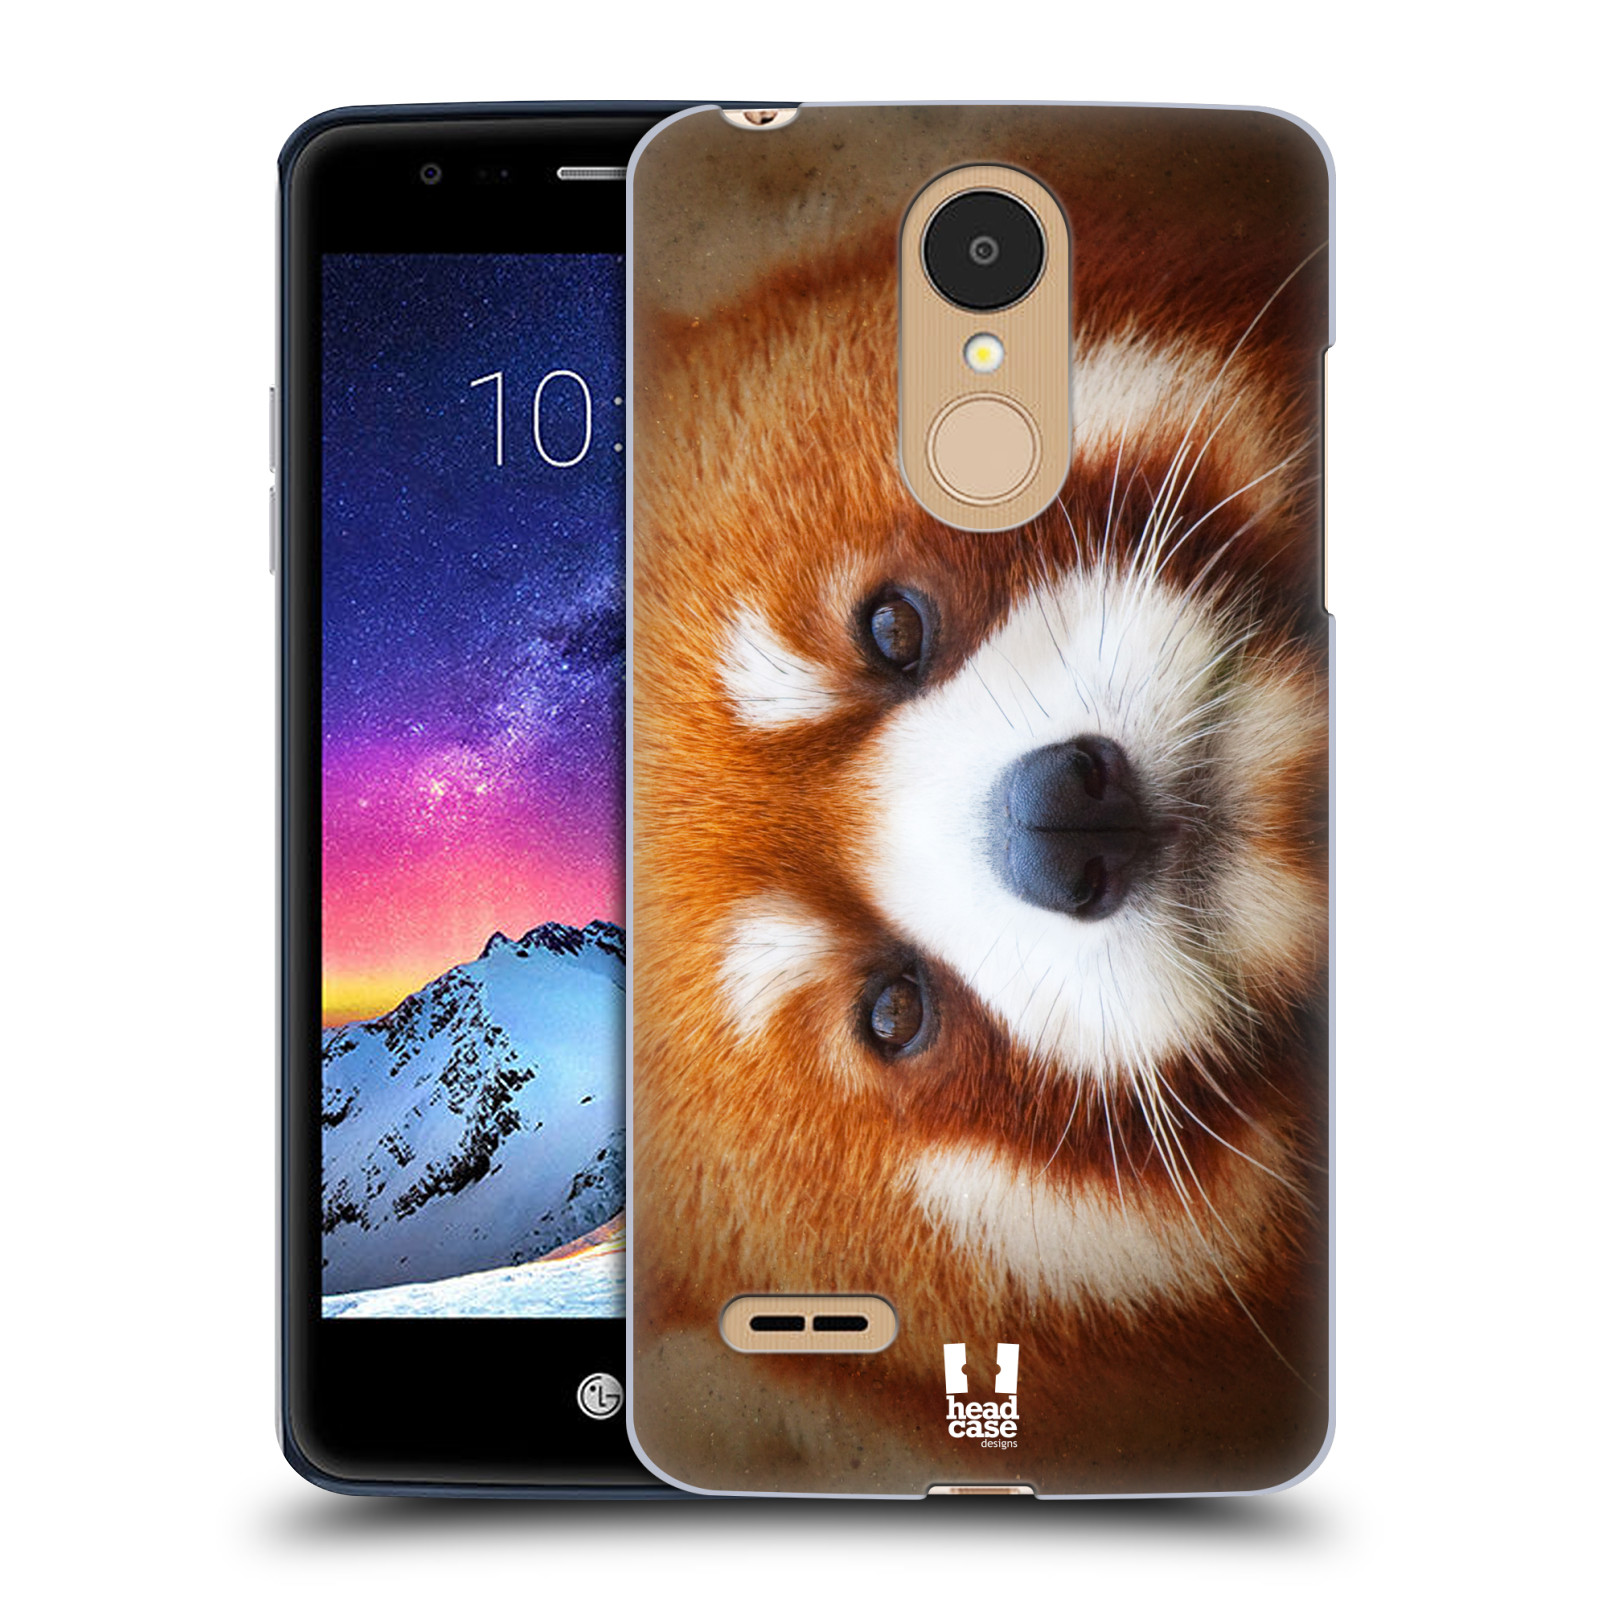 HEAD CASE plastový obal na mobil LG K9 / K8 2018 vzor Zvířecí tváře 2 medvěd panda rudá